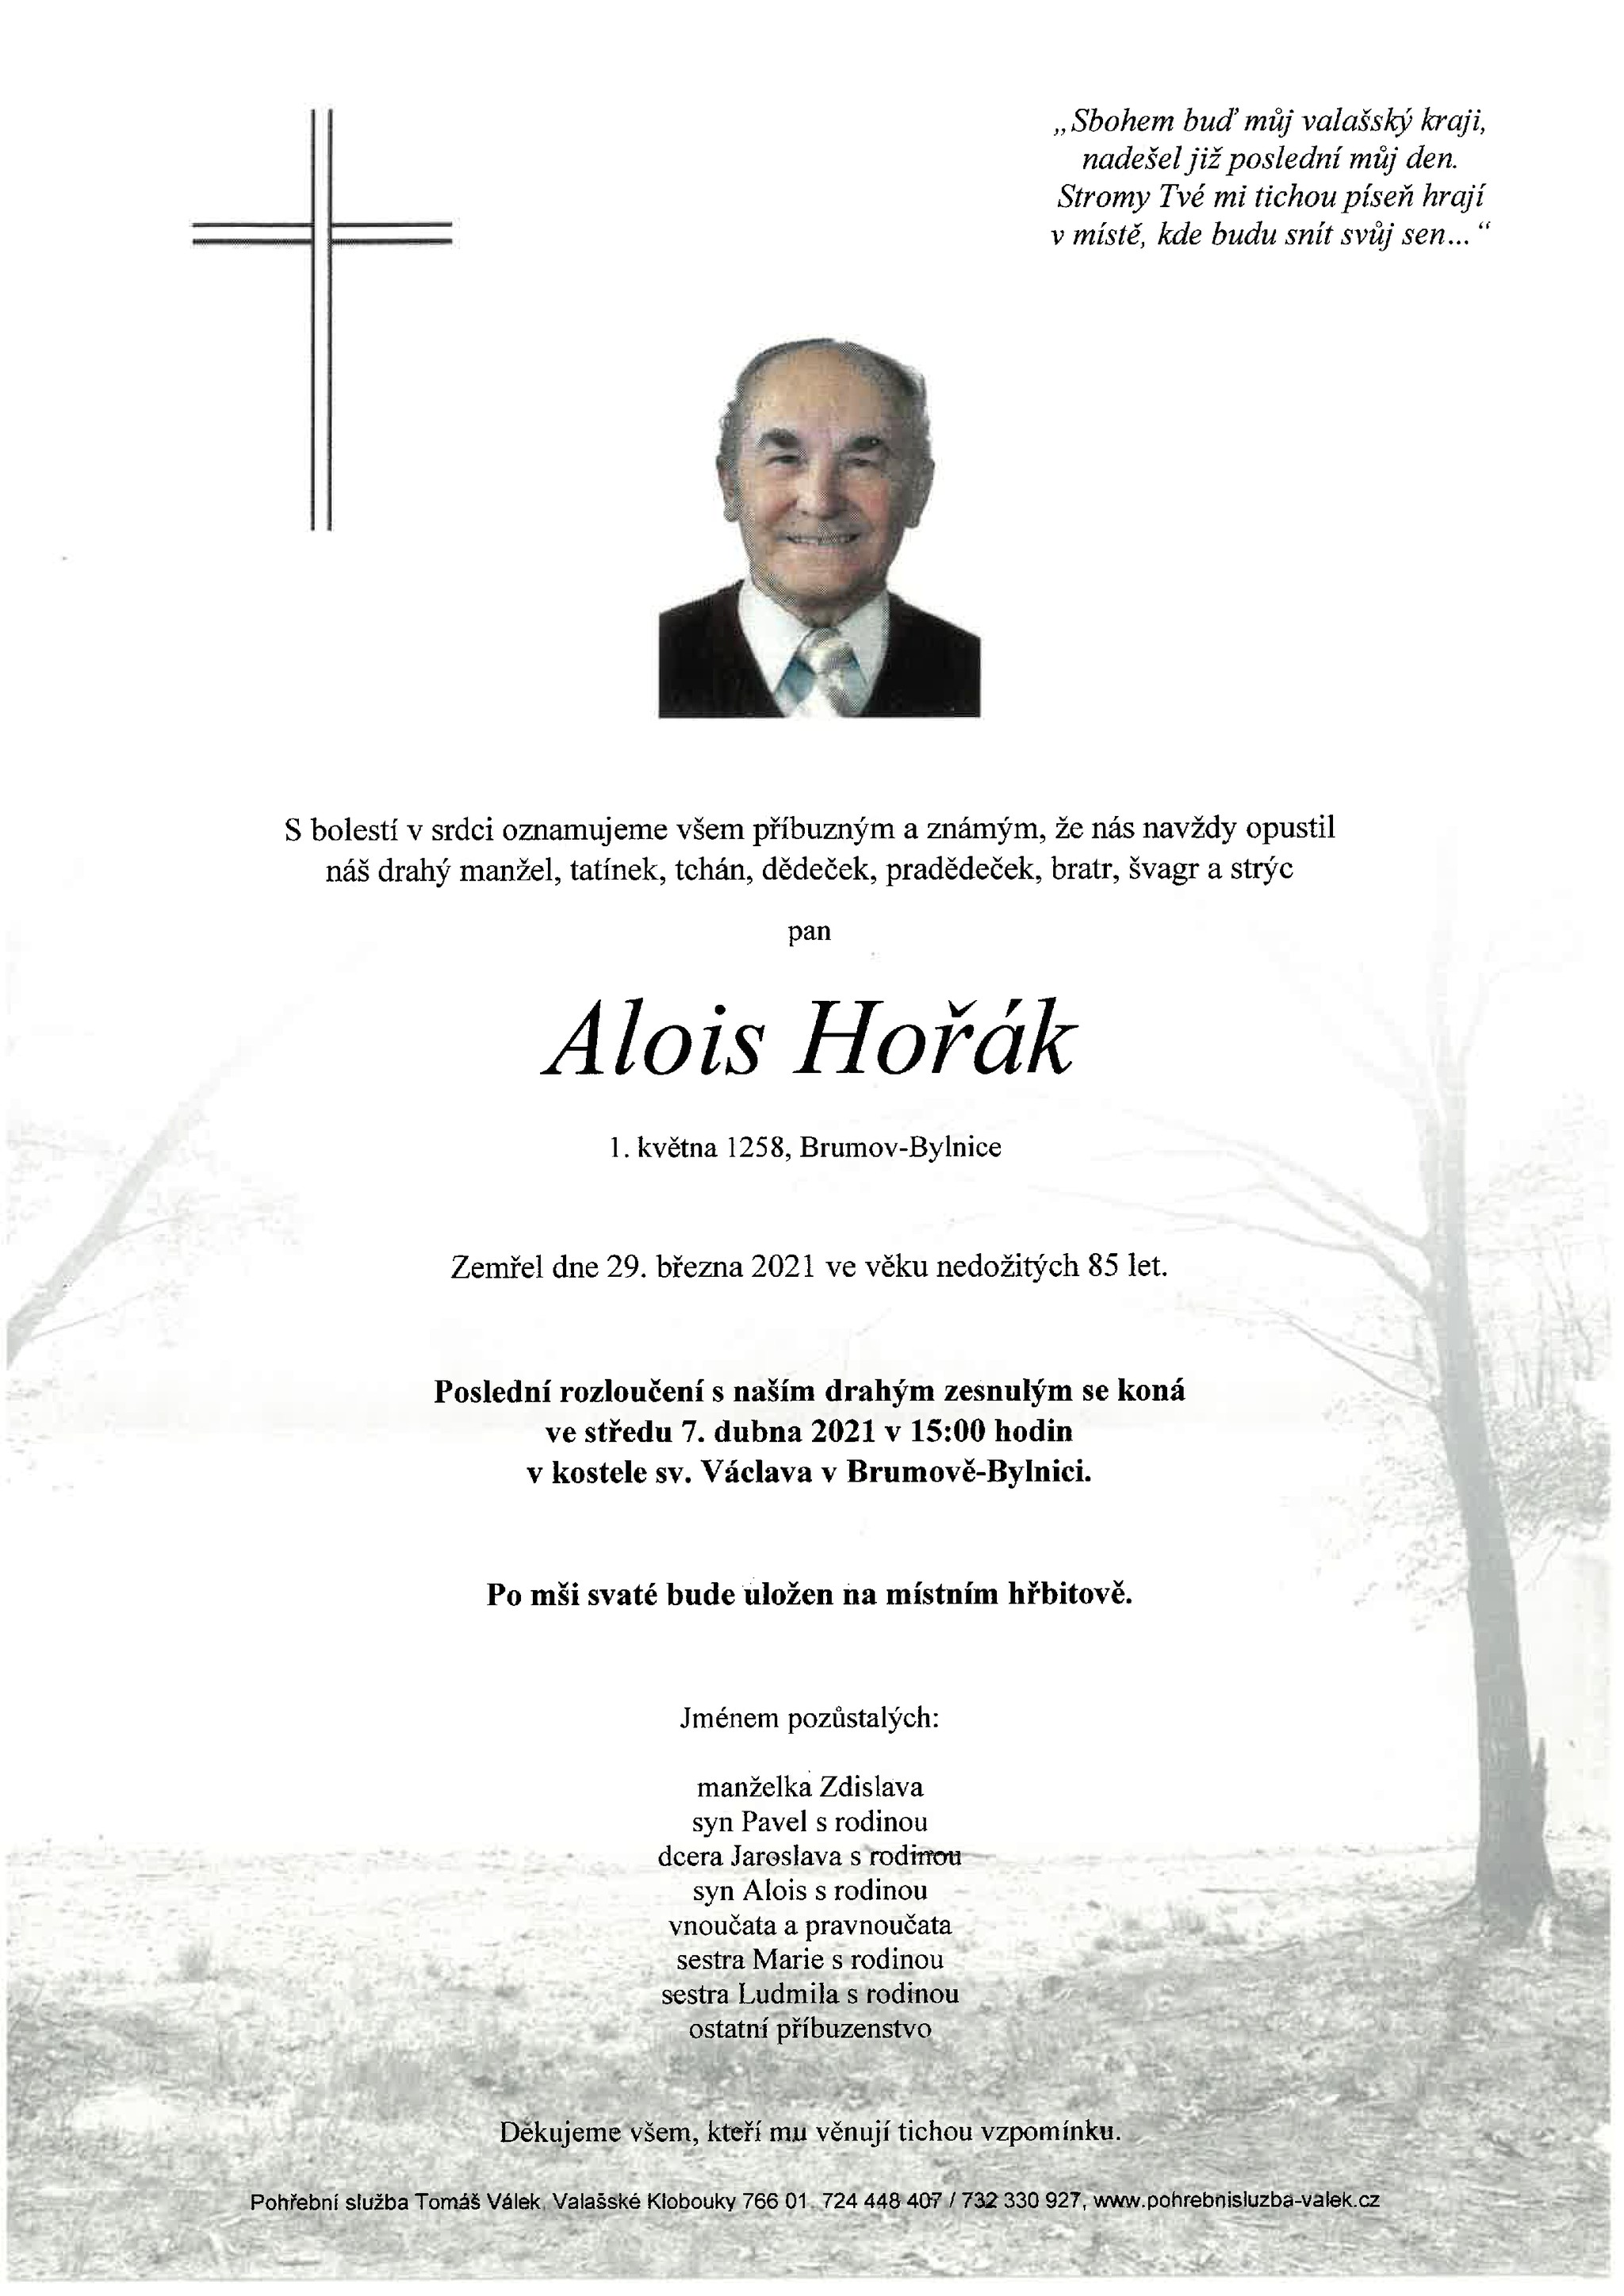 Alois Hořák